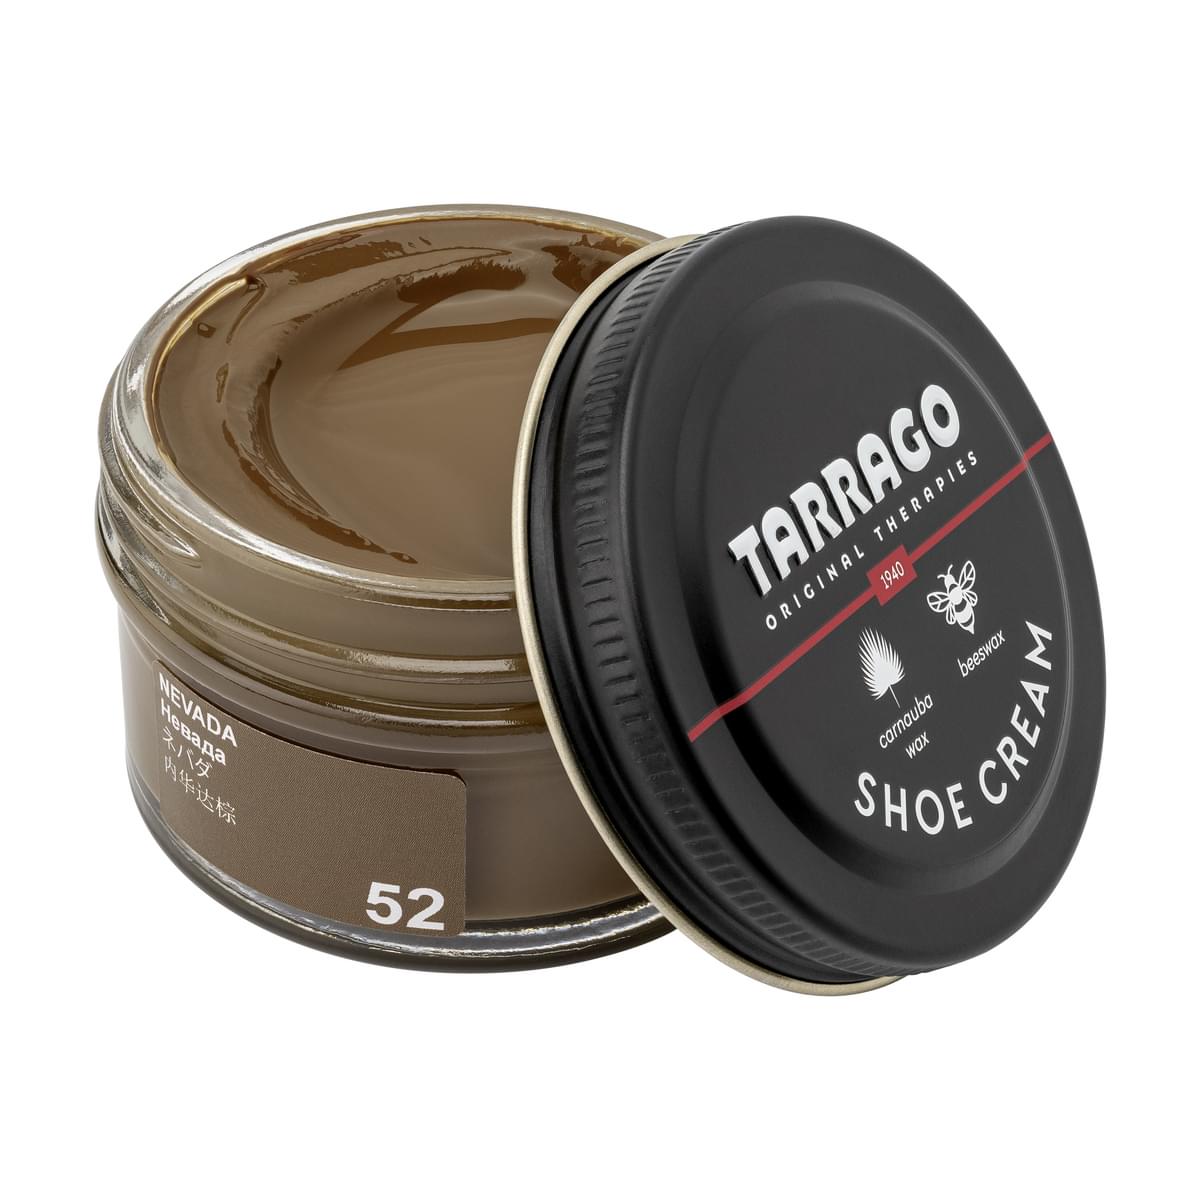 Tarrago Shoe Cream  - Nevada - 52